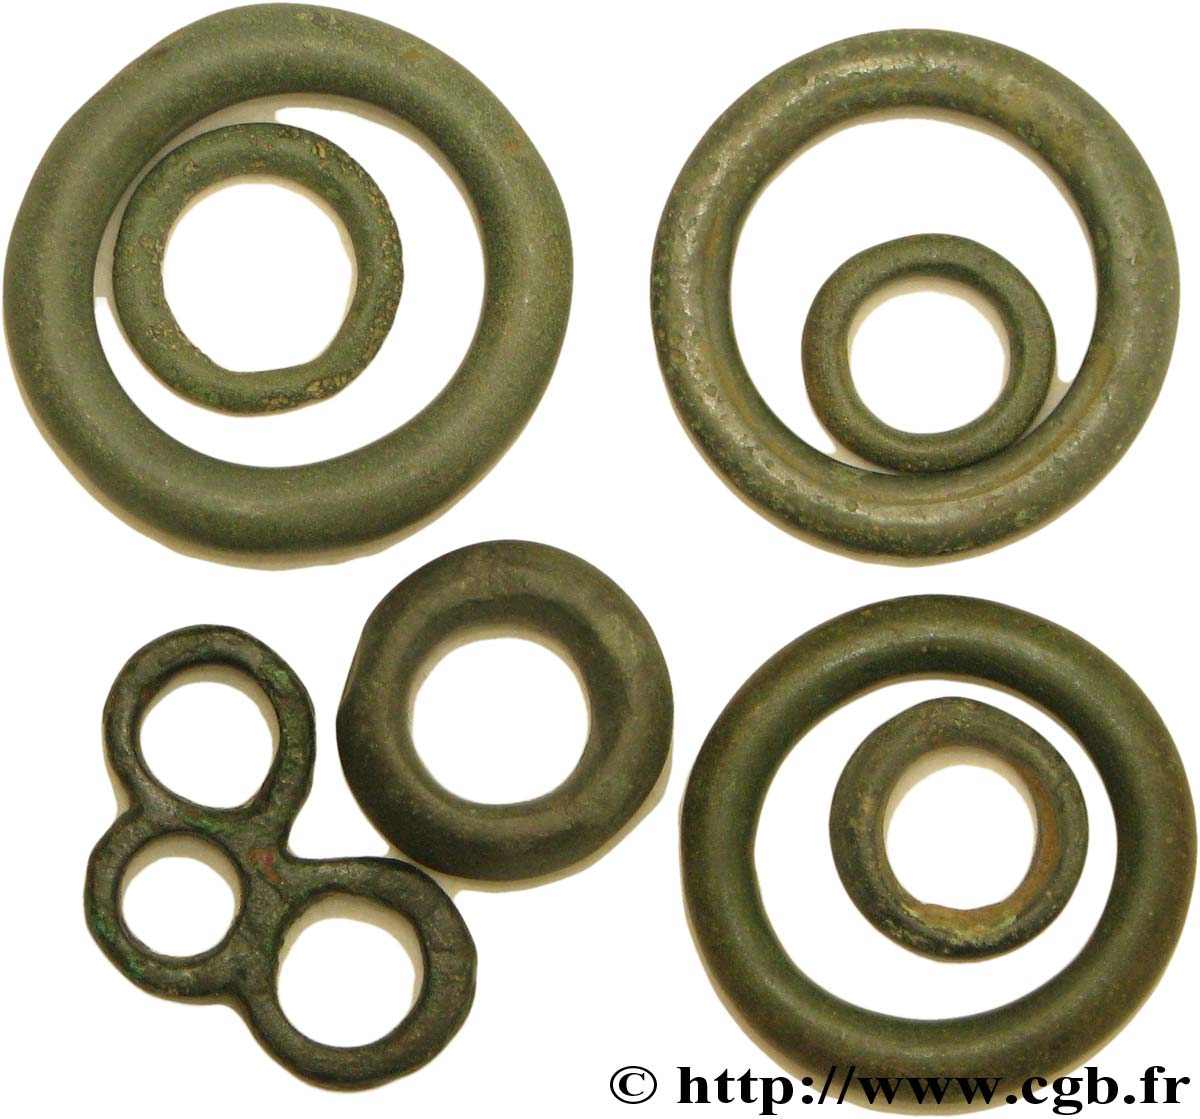  ROUELLES  Lot de 8 rouelles, anneaux ou perles en bronze lot